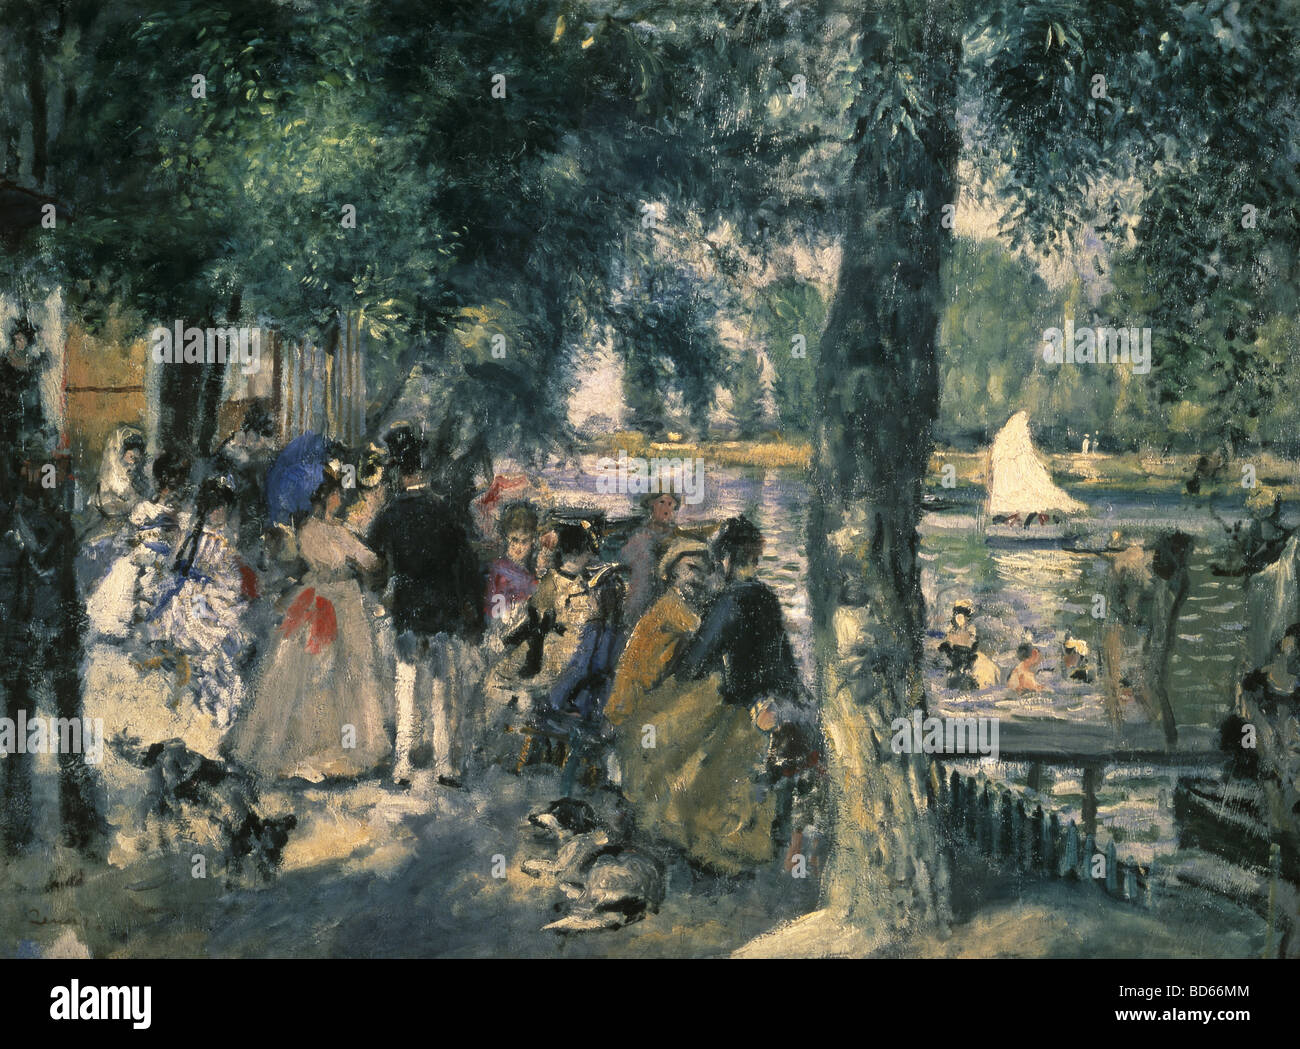 Bildende Kunst, Renoir, Auguste (1841-1919), Malerei, "La Grenouillère", Öl auf Leinwand, 1869, Puschkin-Museum, Moskau, Fisch Stockfoto